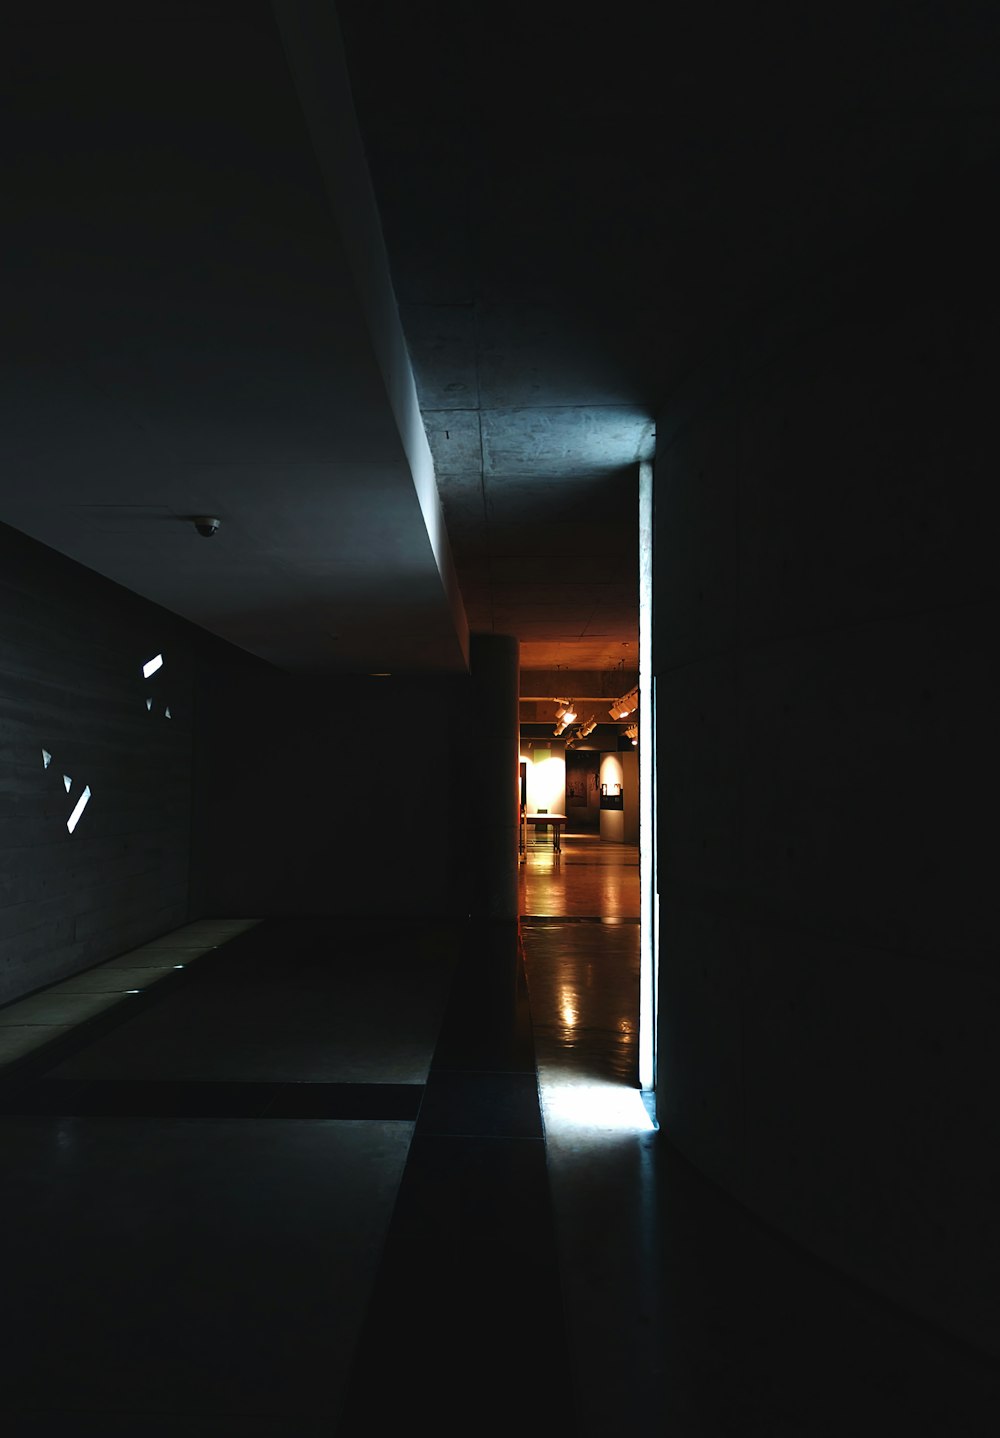 a dimly lit hallway in a dark room